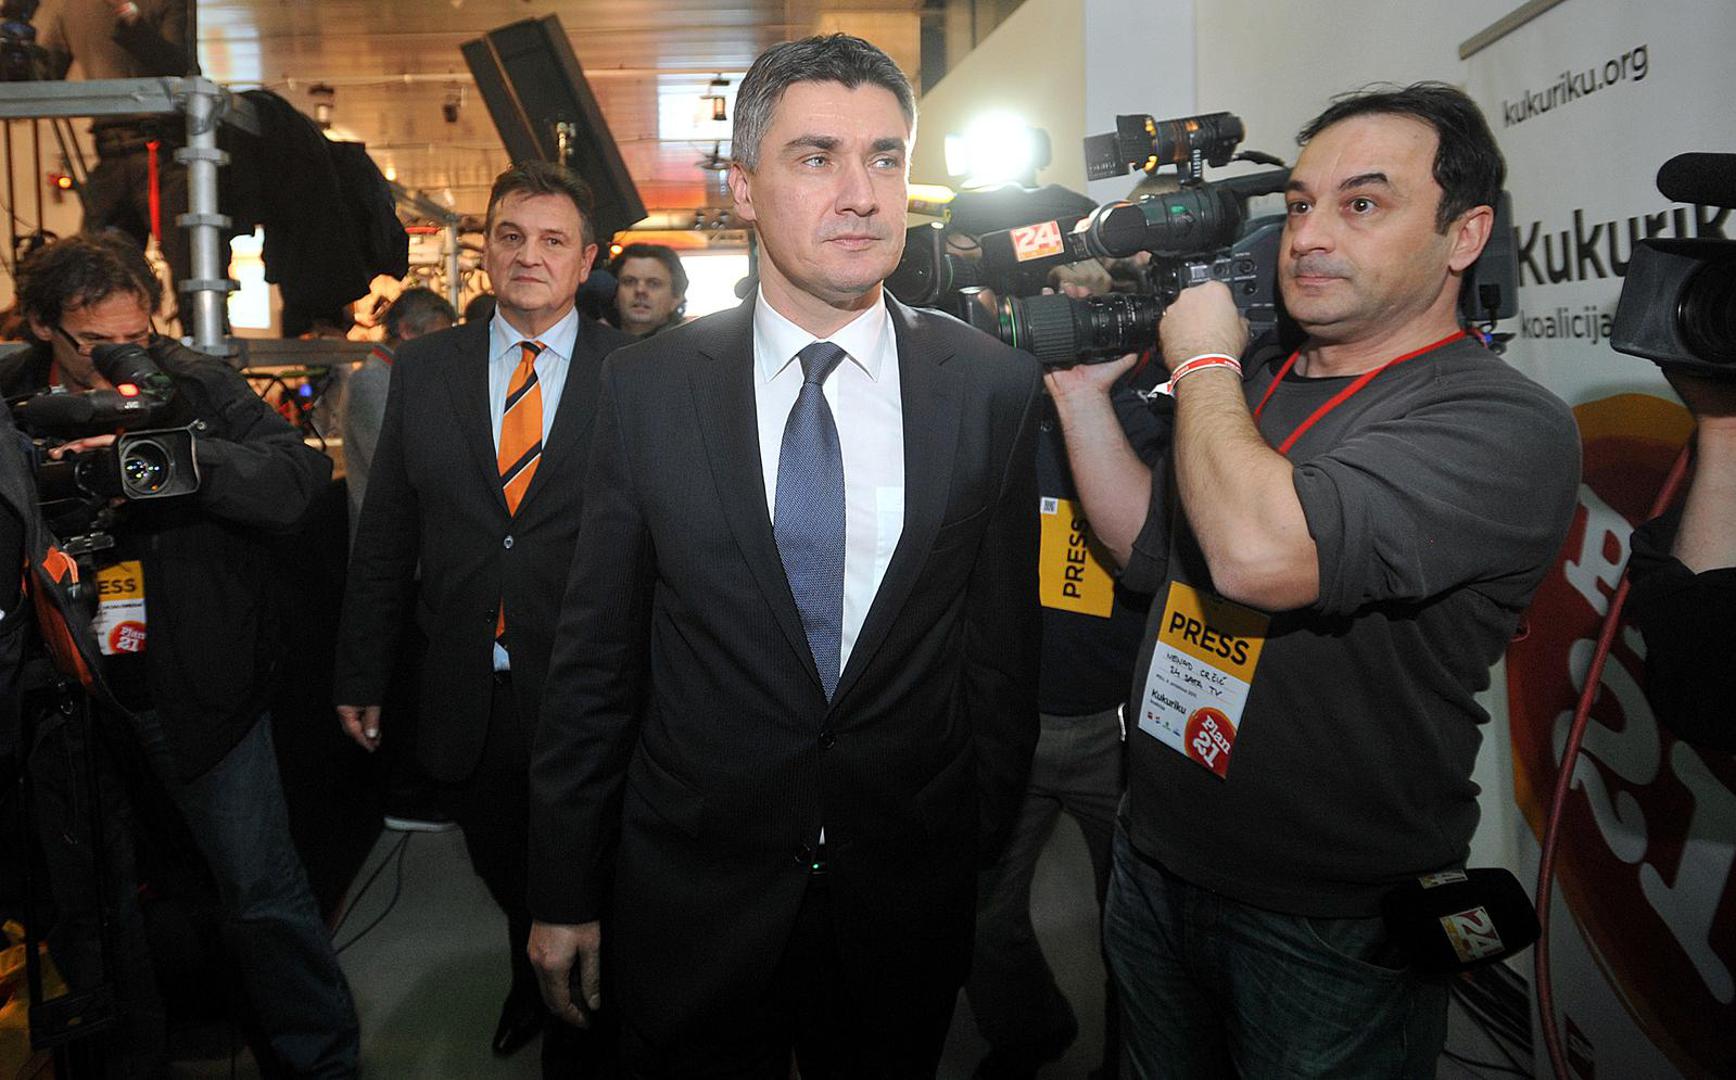 Na idućim izborima, 2011. Milanović je odnio pobjedu, predvodeći Kukuriku koaliciju